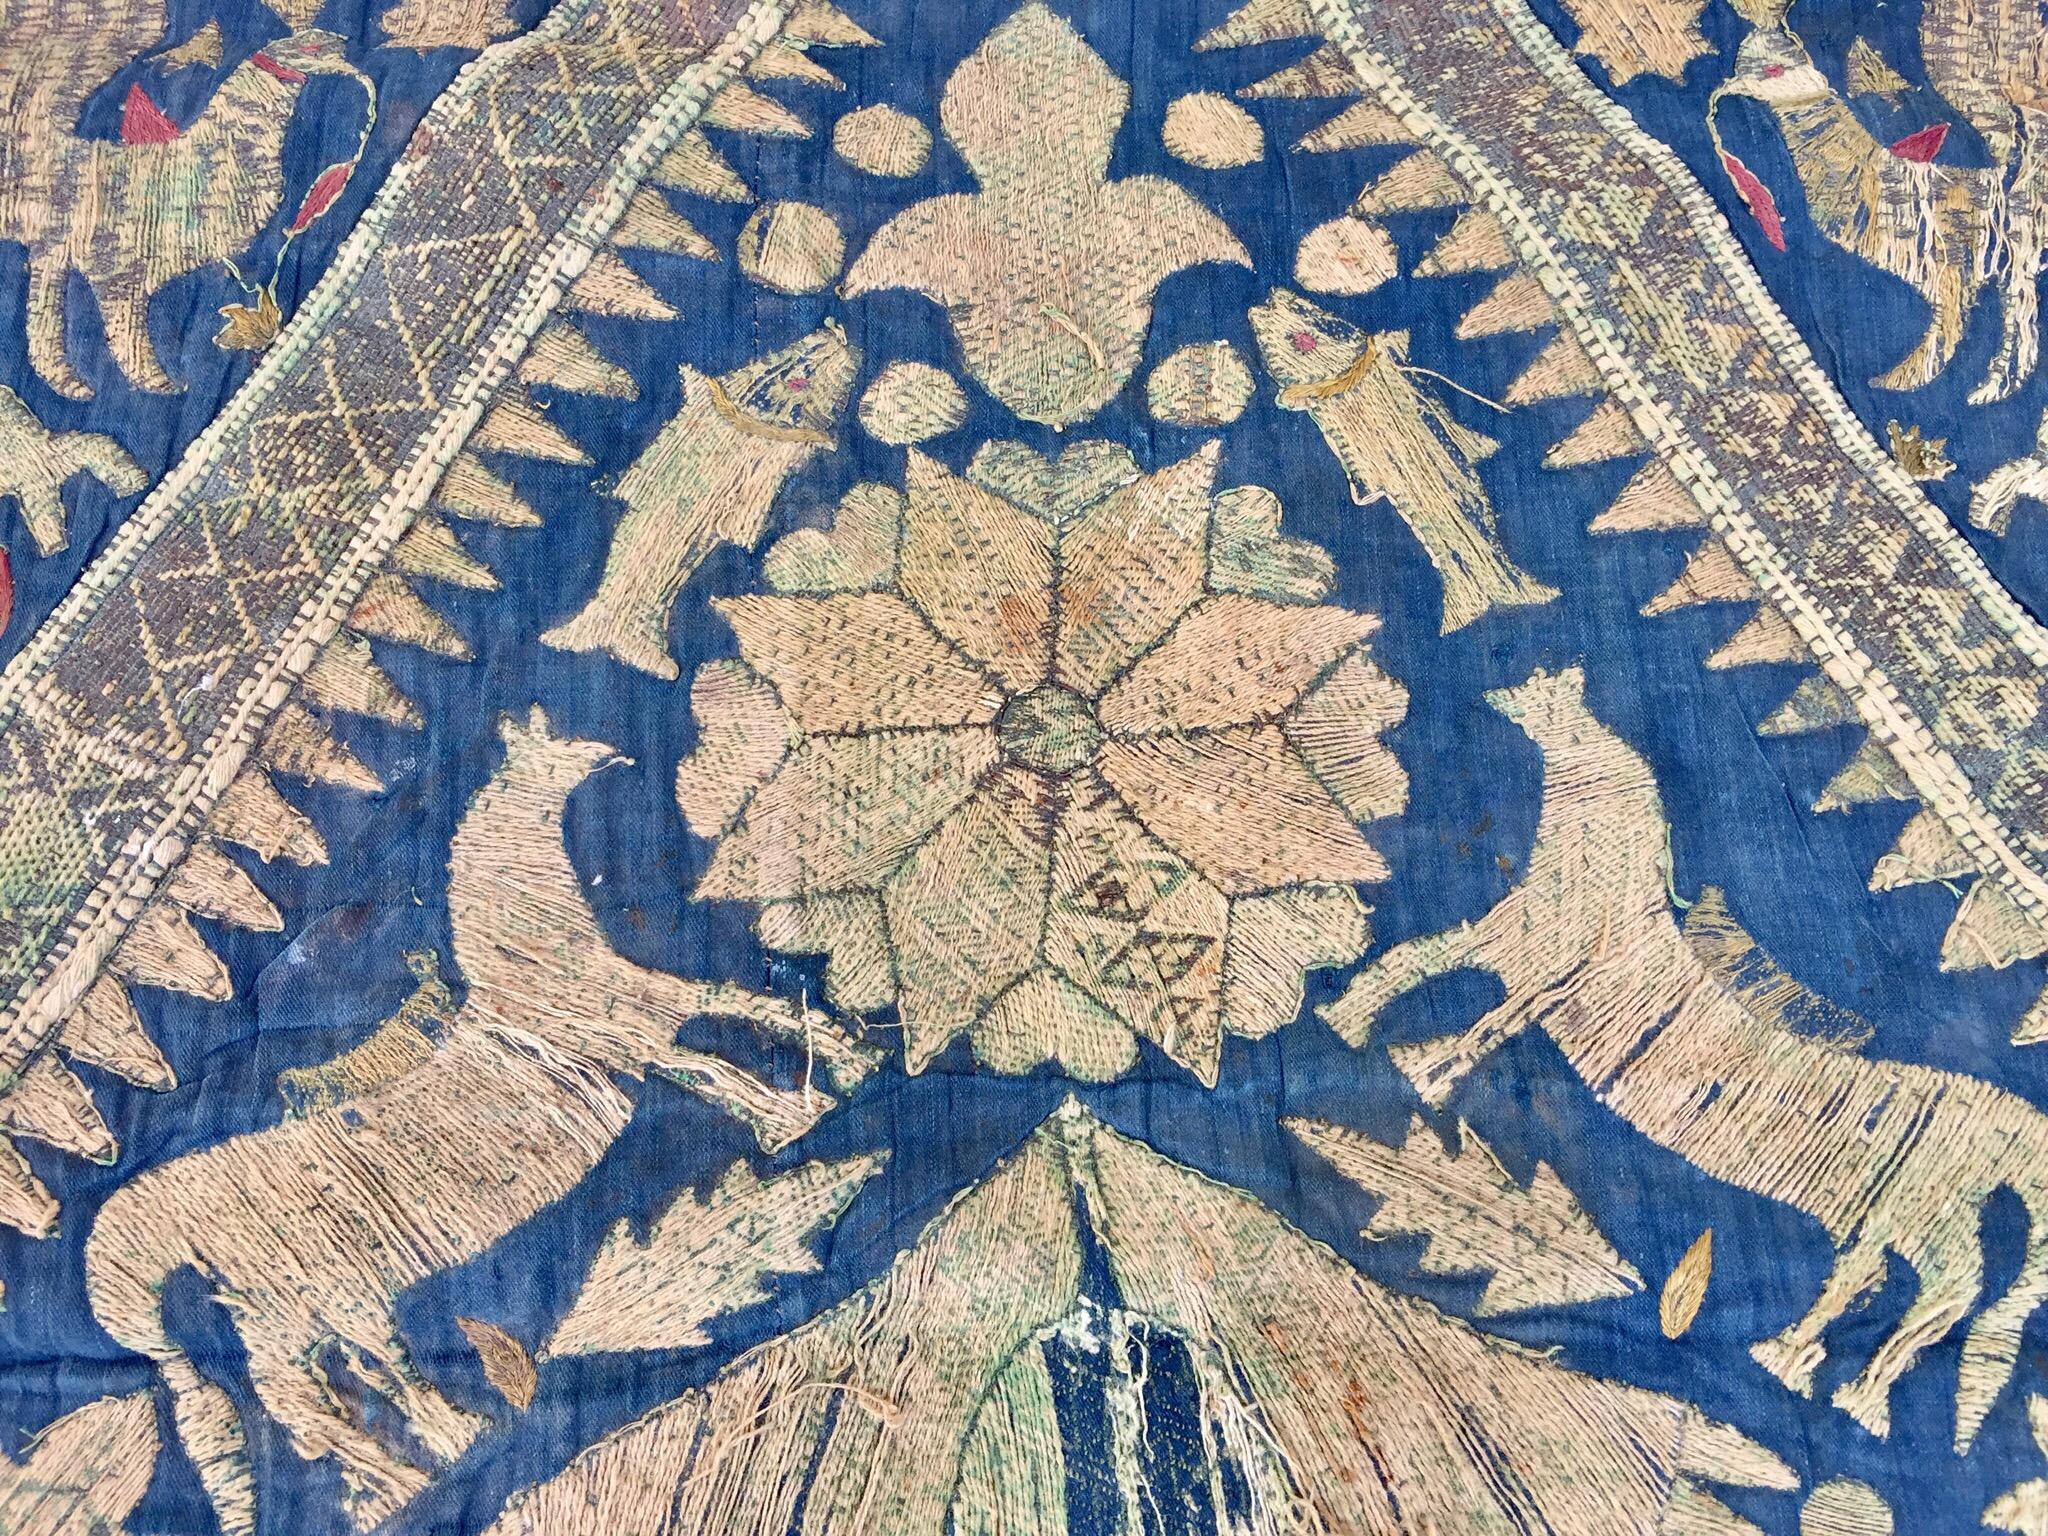 Silk 19th Century Moorish Islamic Ottoman Empire Textile Metallic Embroidered